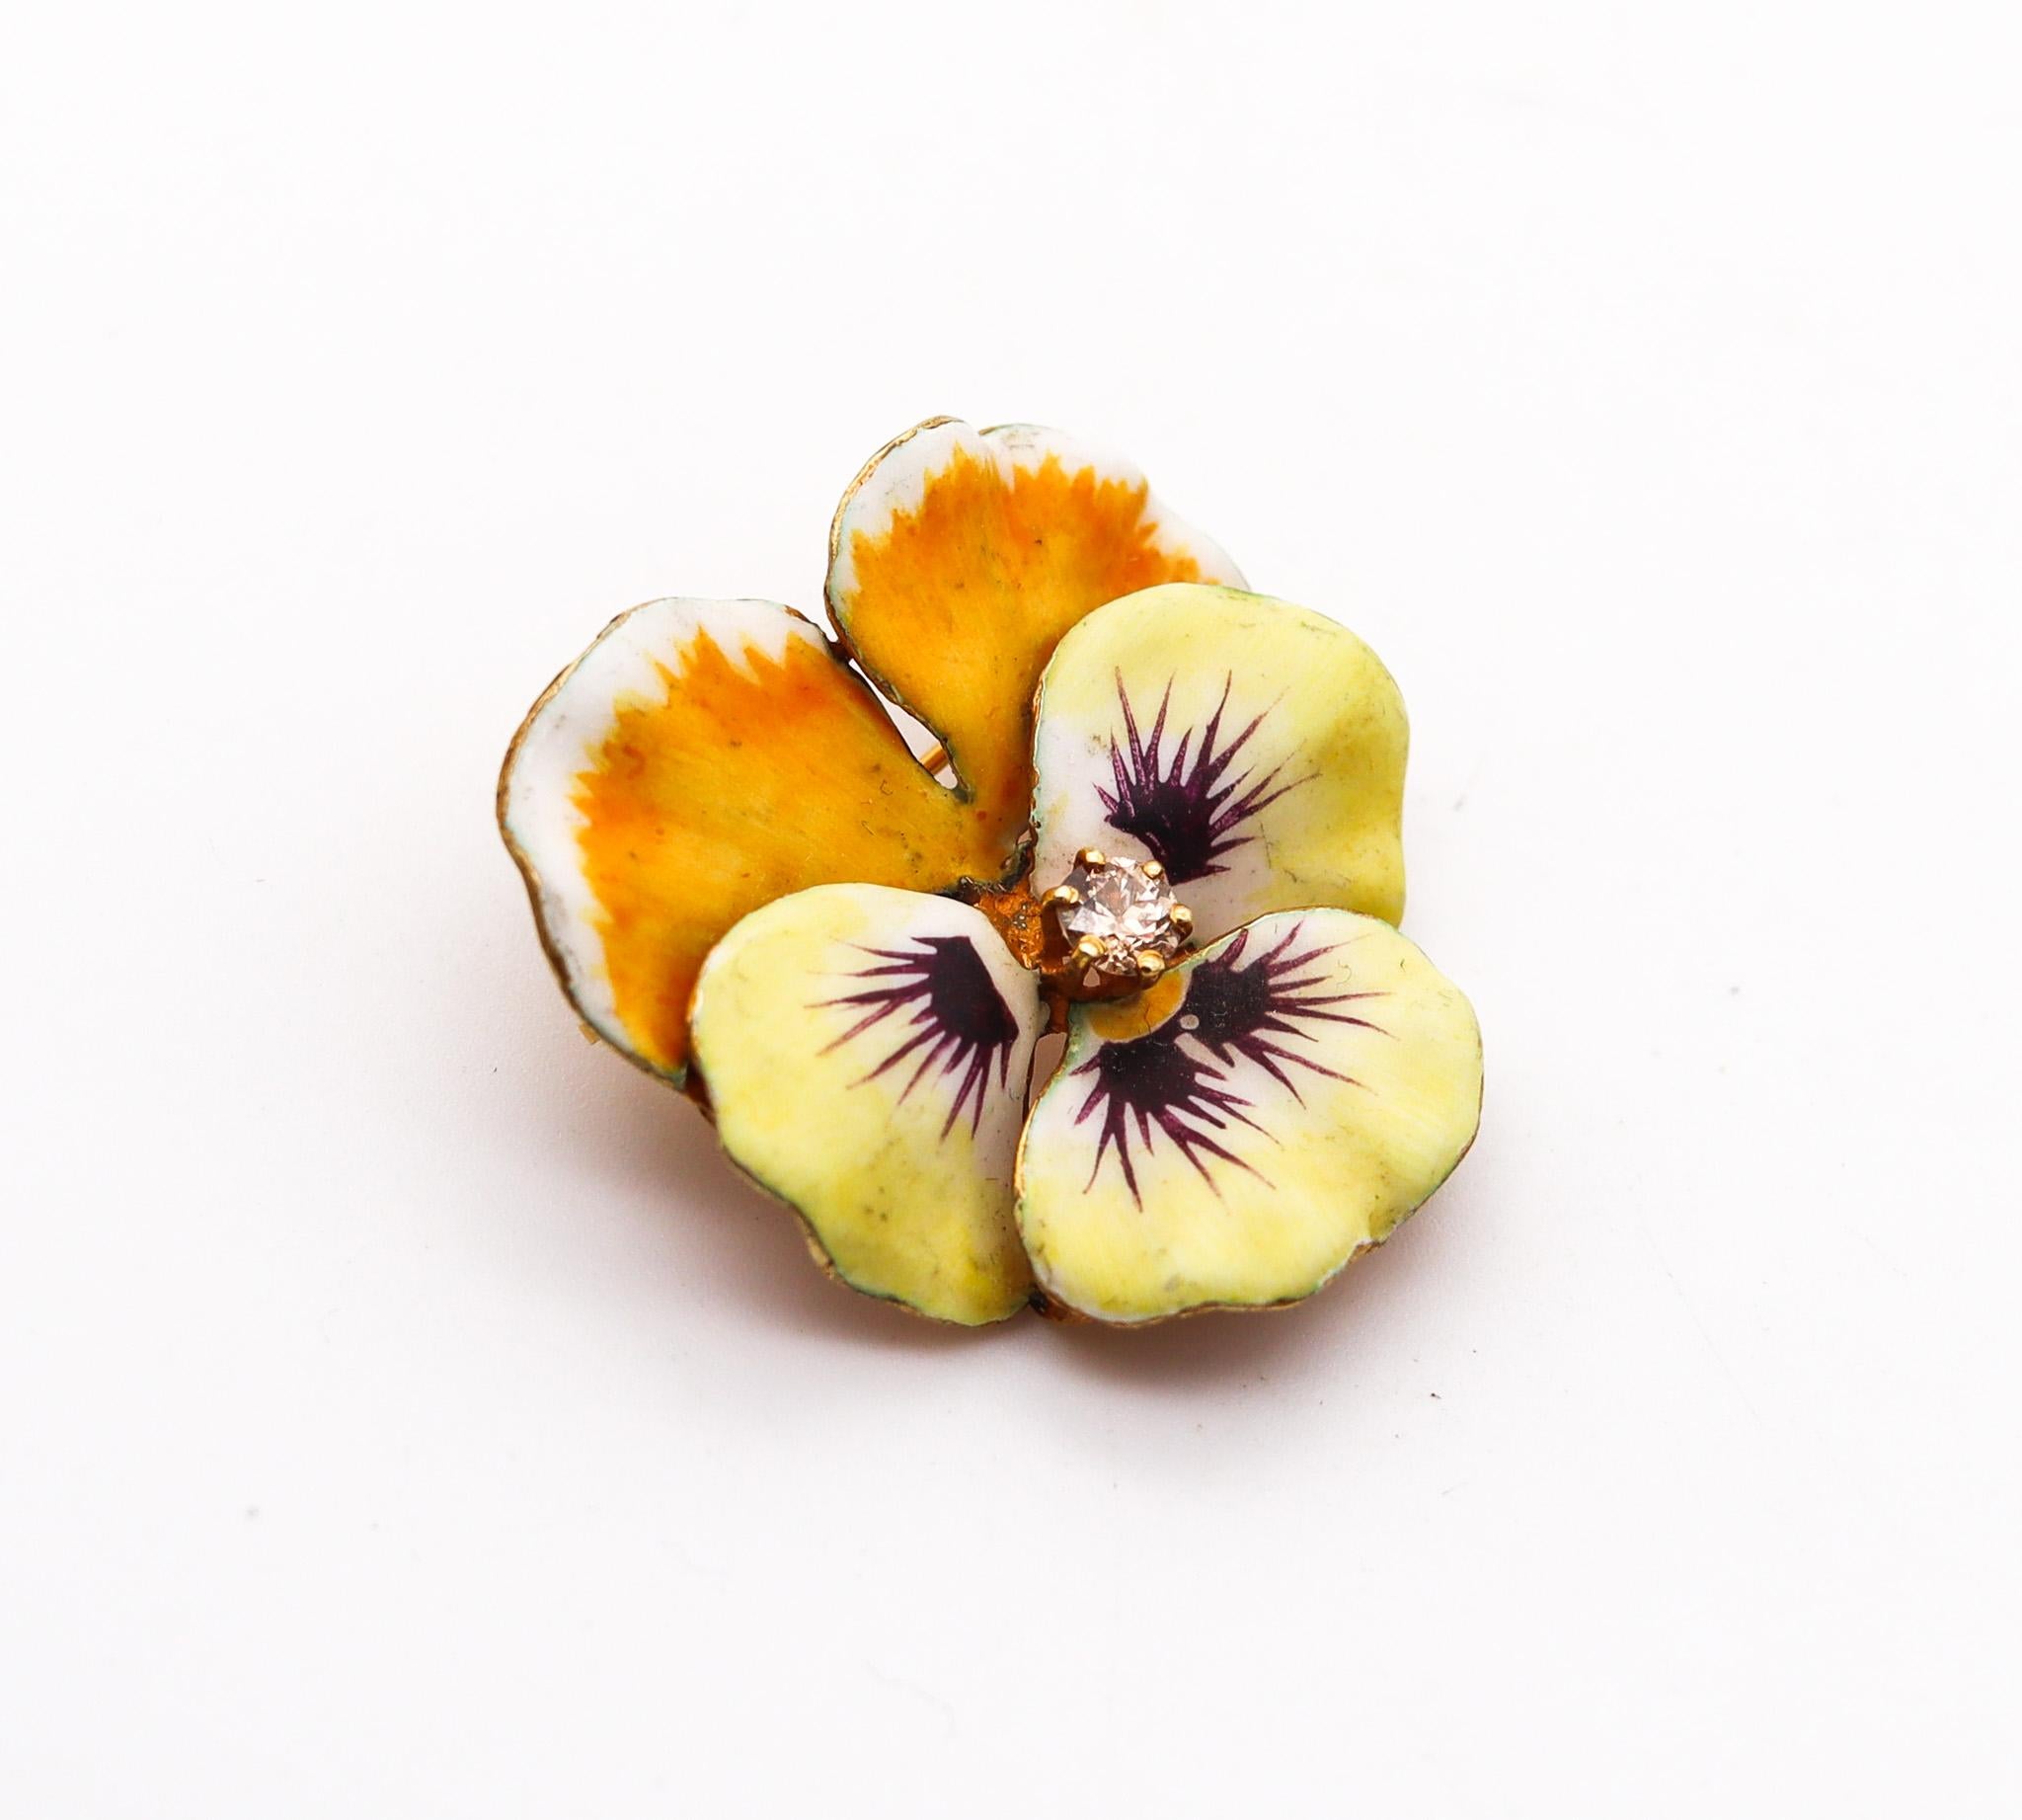 Broche édouardienne en forme de fleur de Pansy émaillée.

Belle fleur de pensée à cinq pétales en trois dimensions, créée dans le New Jersey en Amérique du Nord pendant les périodes édouardienne et Art nouveau, entre 1900 et 1910. Cette broche